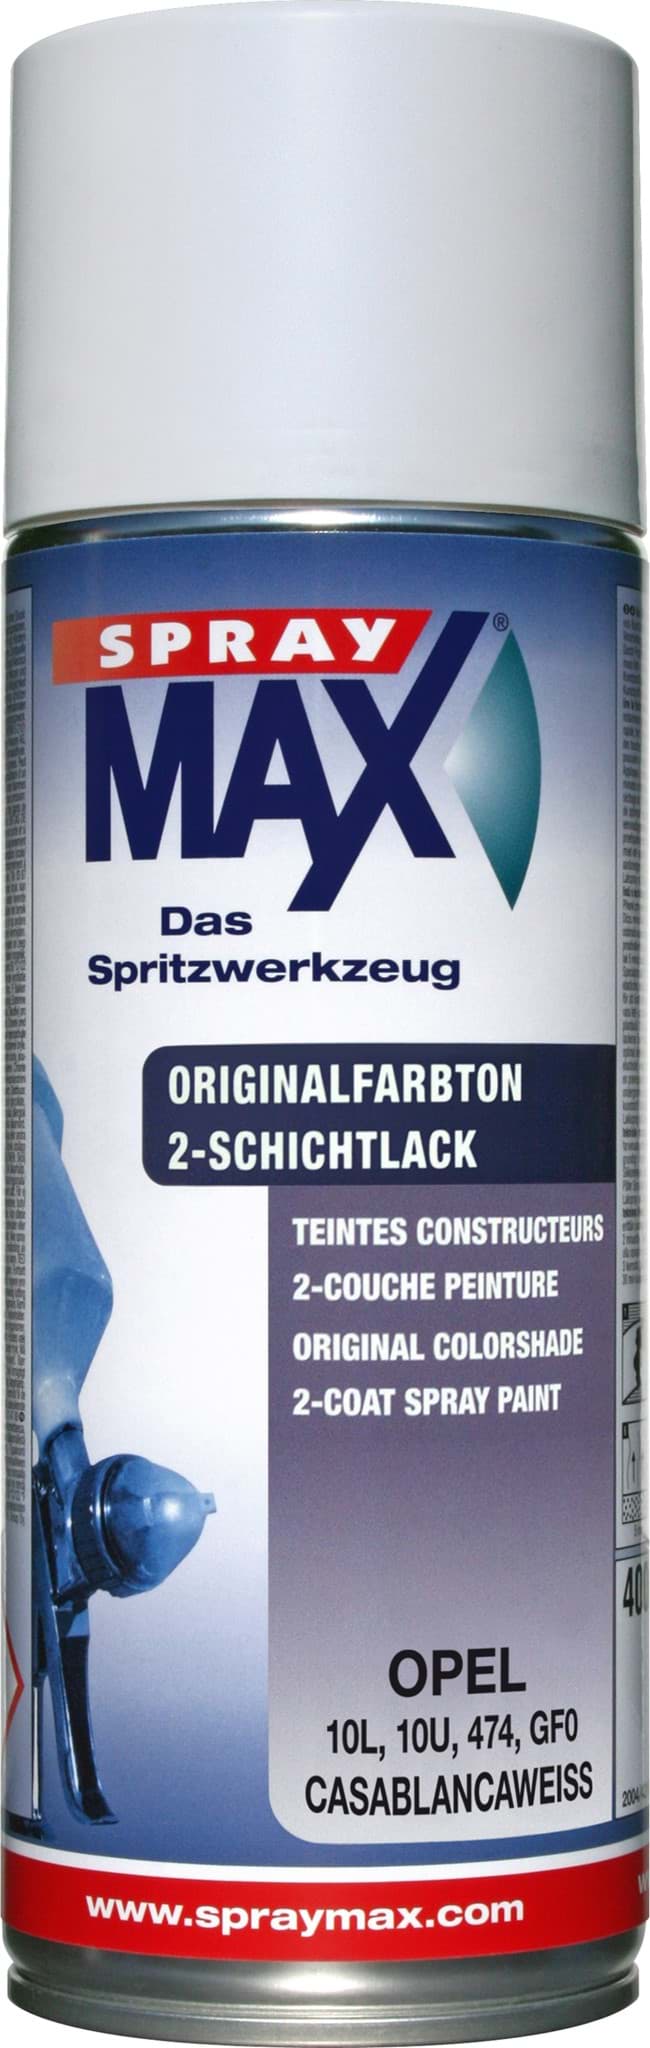 Afbeelding van SprayMax Originalfarbton für Opel 474 casablancaweiss